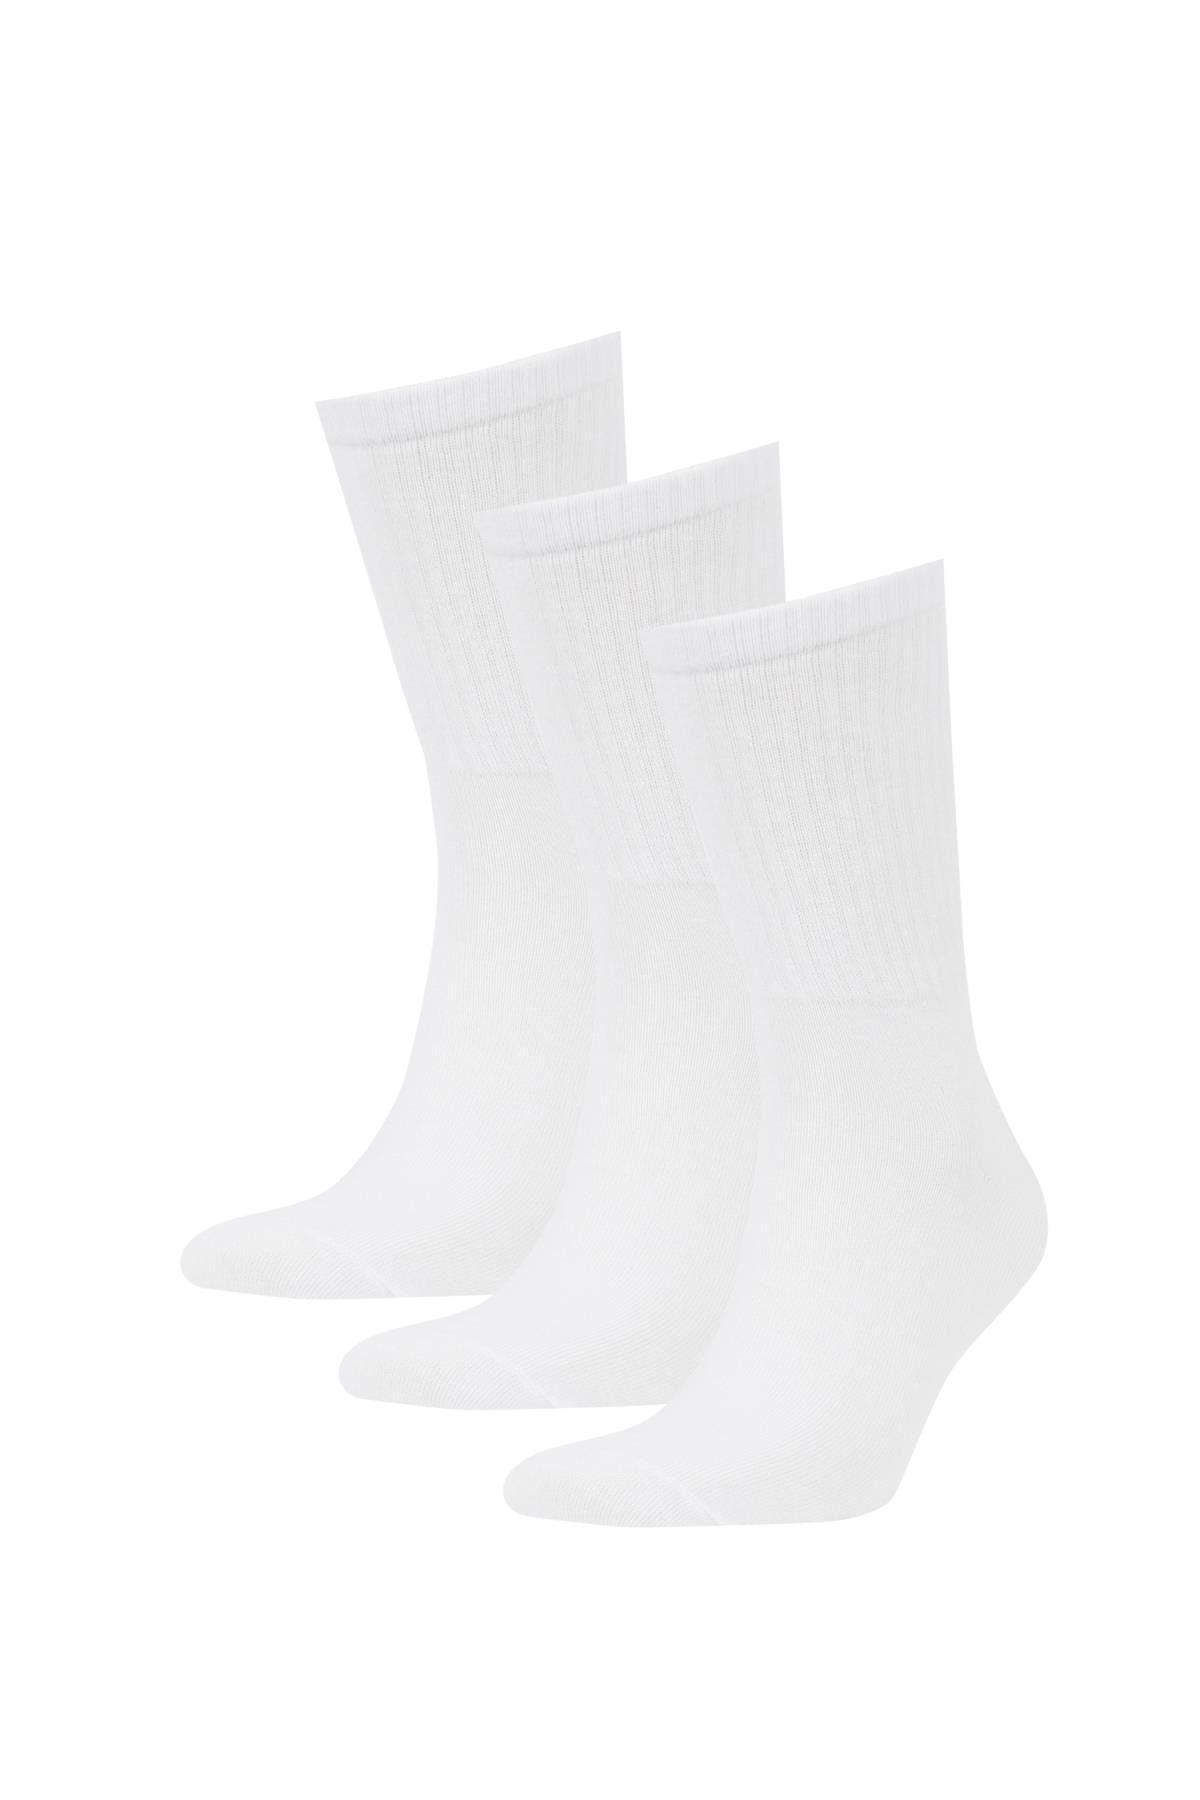 Defacto Erkek 3lü Pamuklu Uzun Çorap Z0806azns